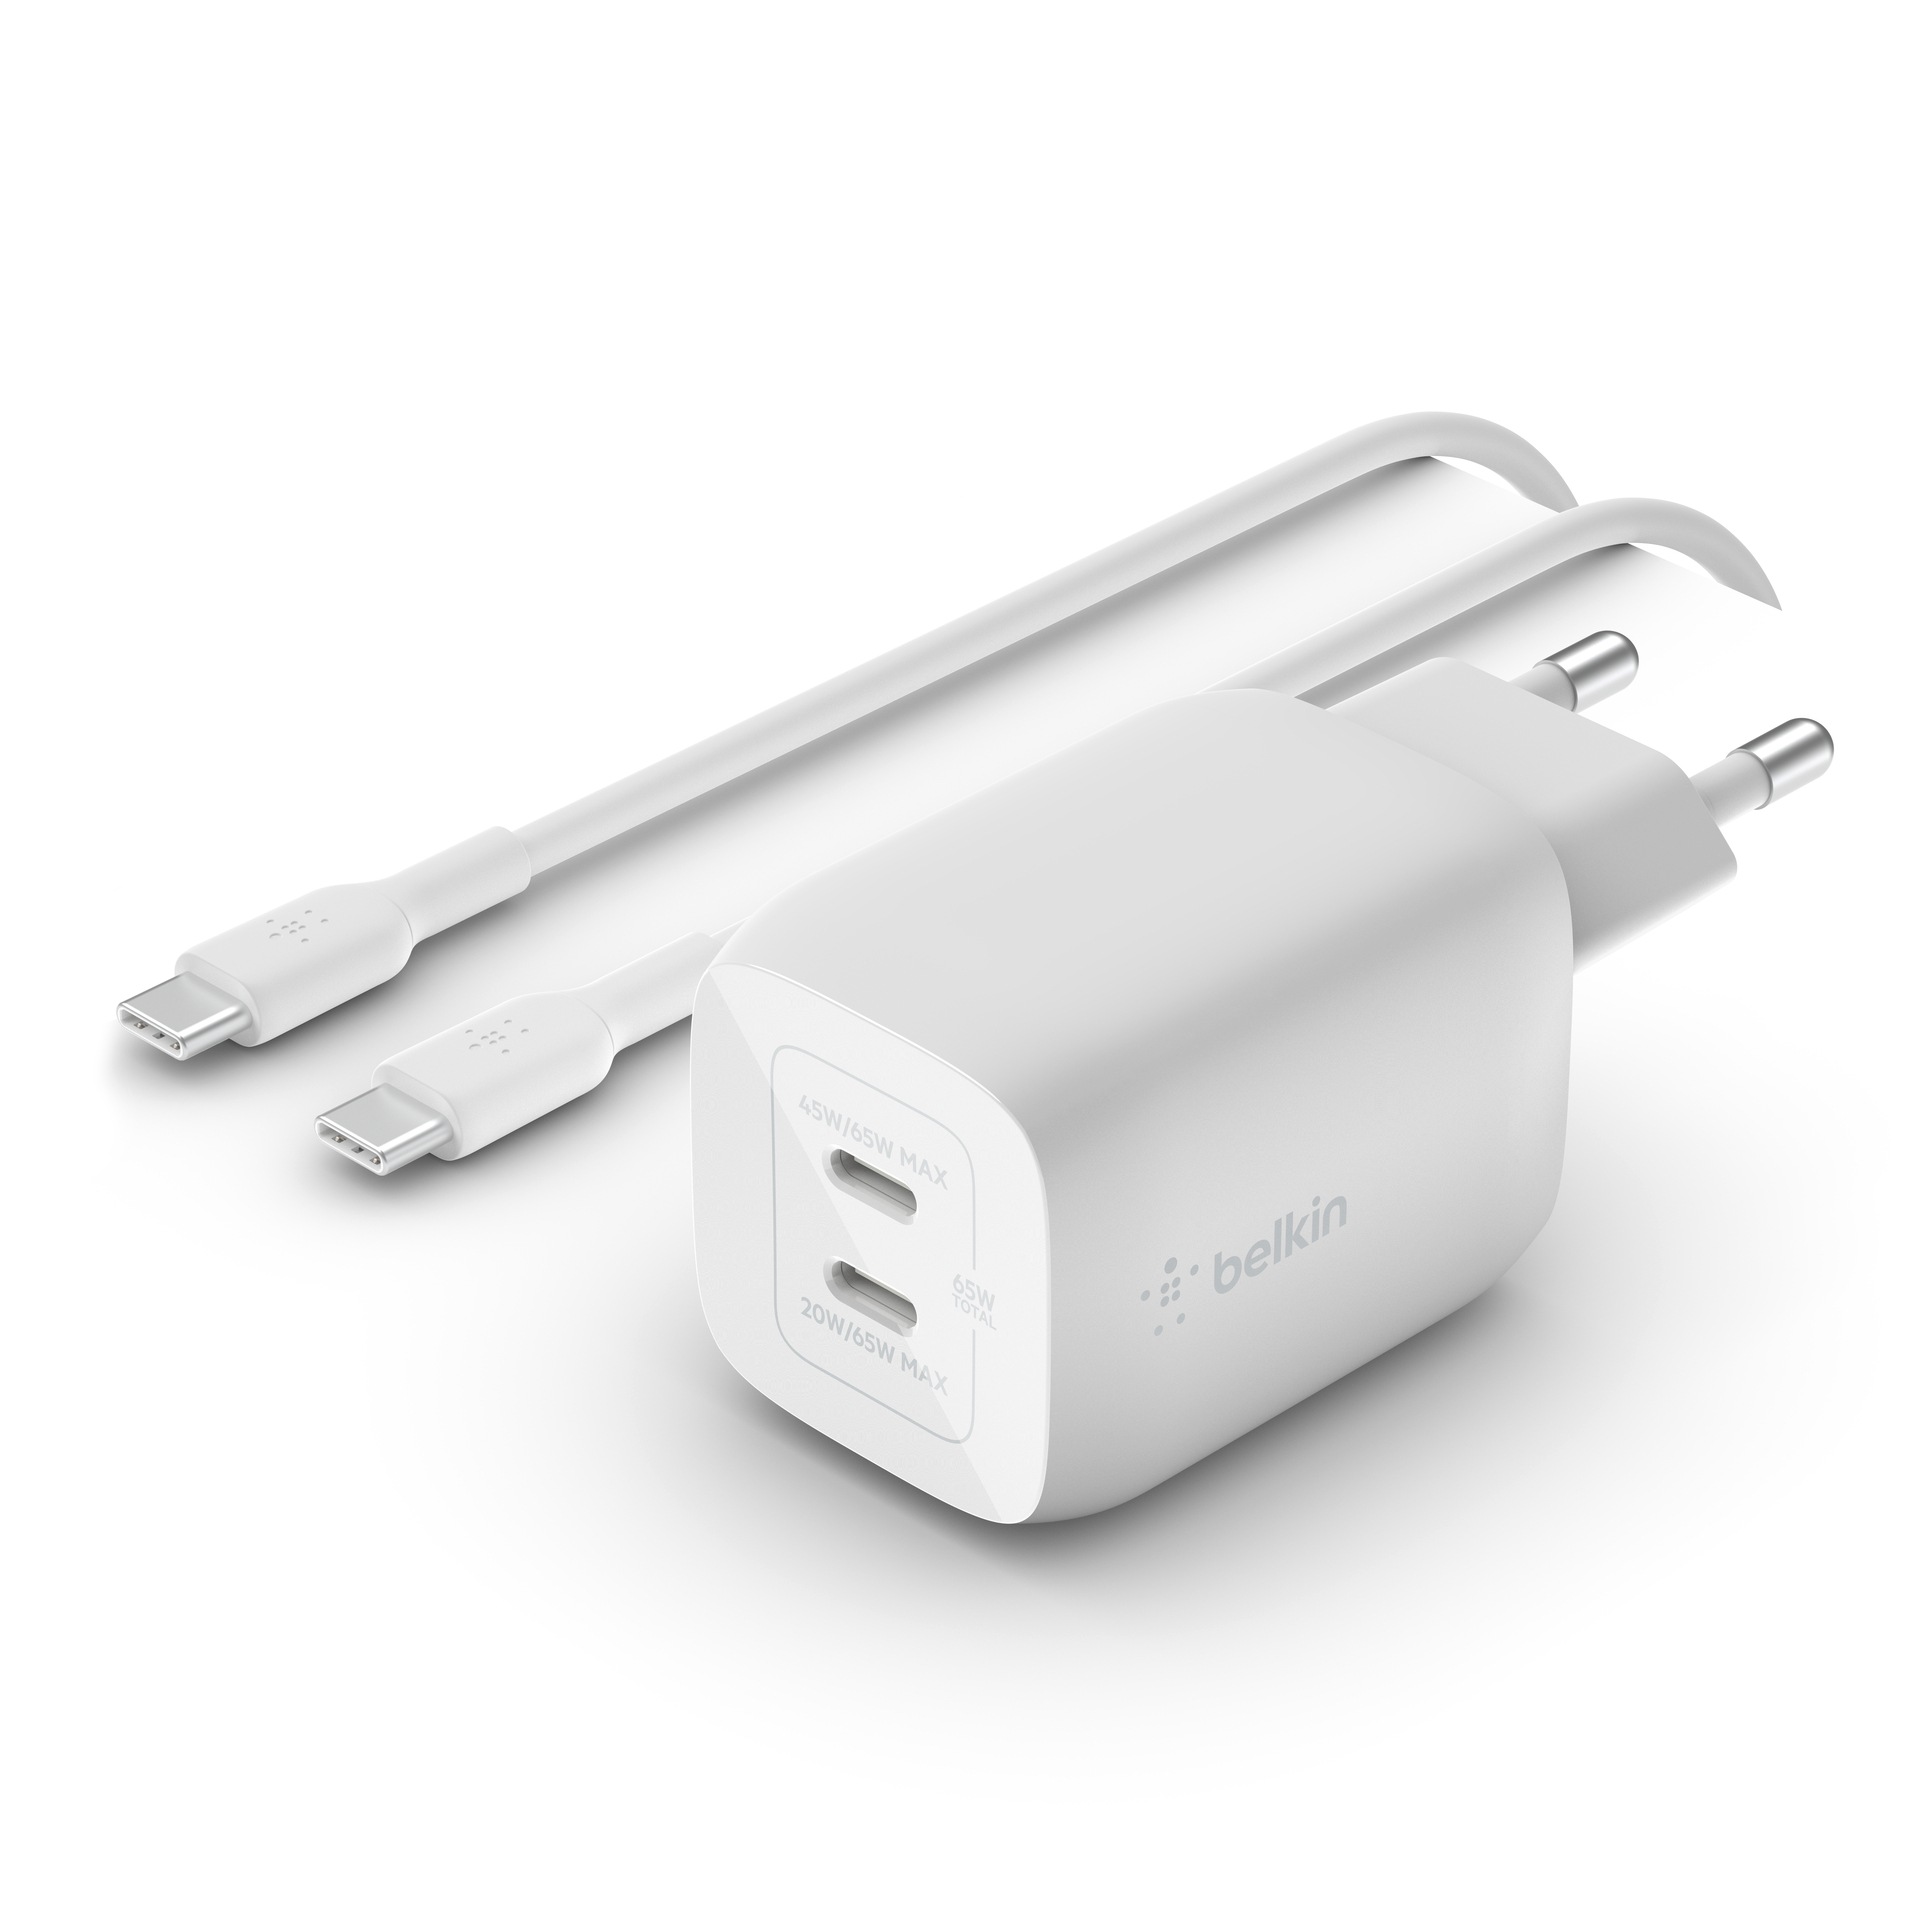 Belkin USB-Ladegerät »65W Dual USB-C GaN Ladegerät mit PD und PPS + 2m Kabel«, für Apple iPhone Samsung Galaxy Google Pixel